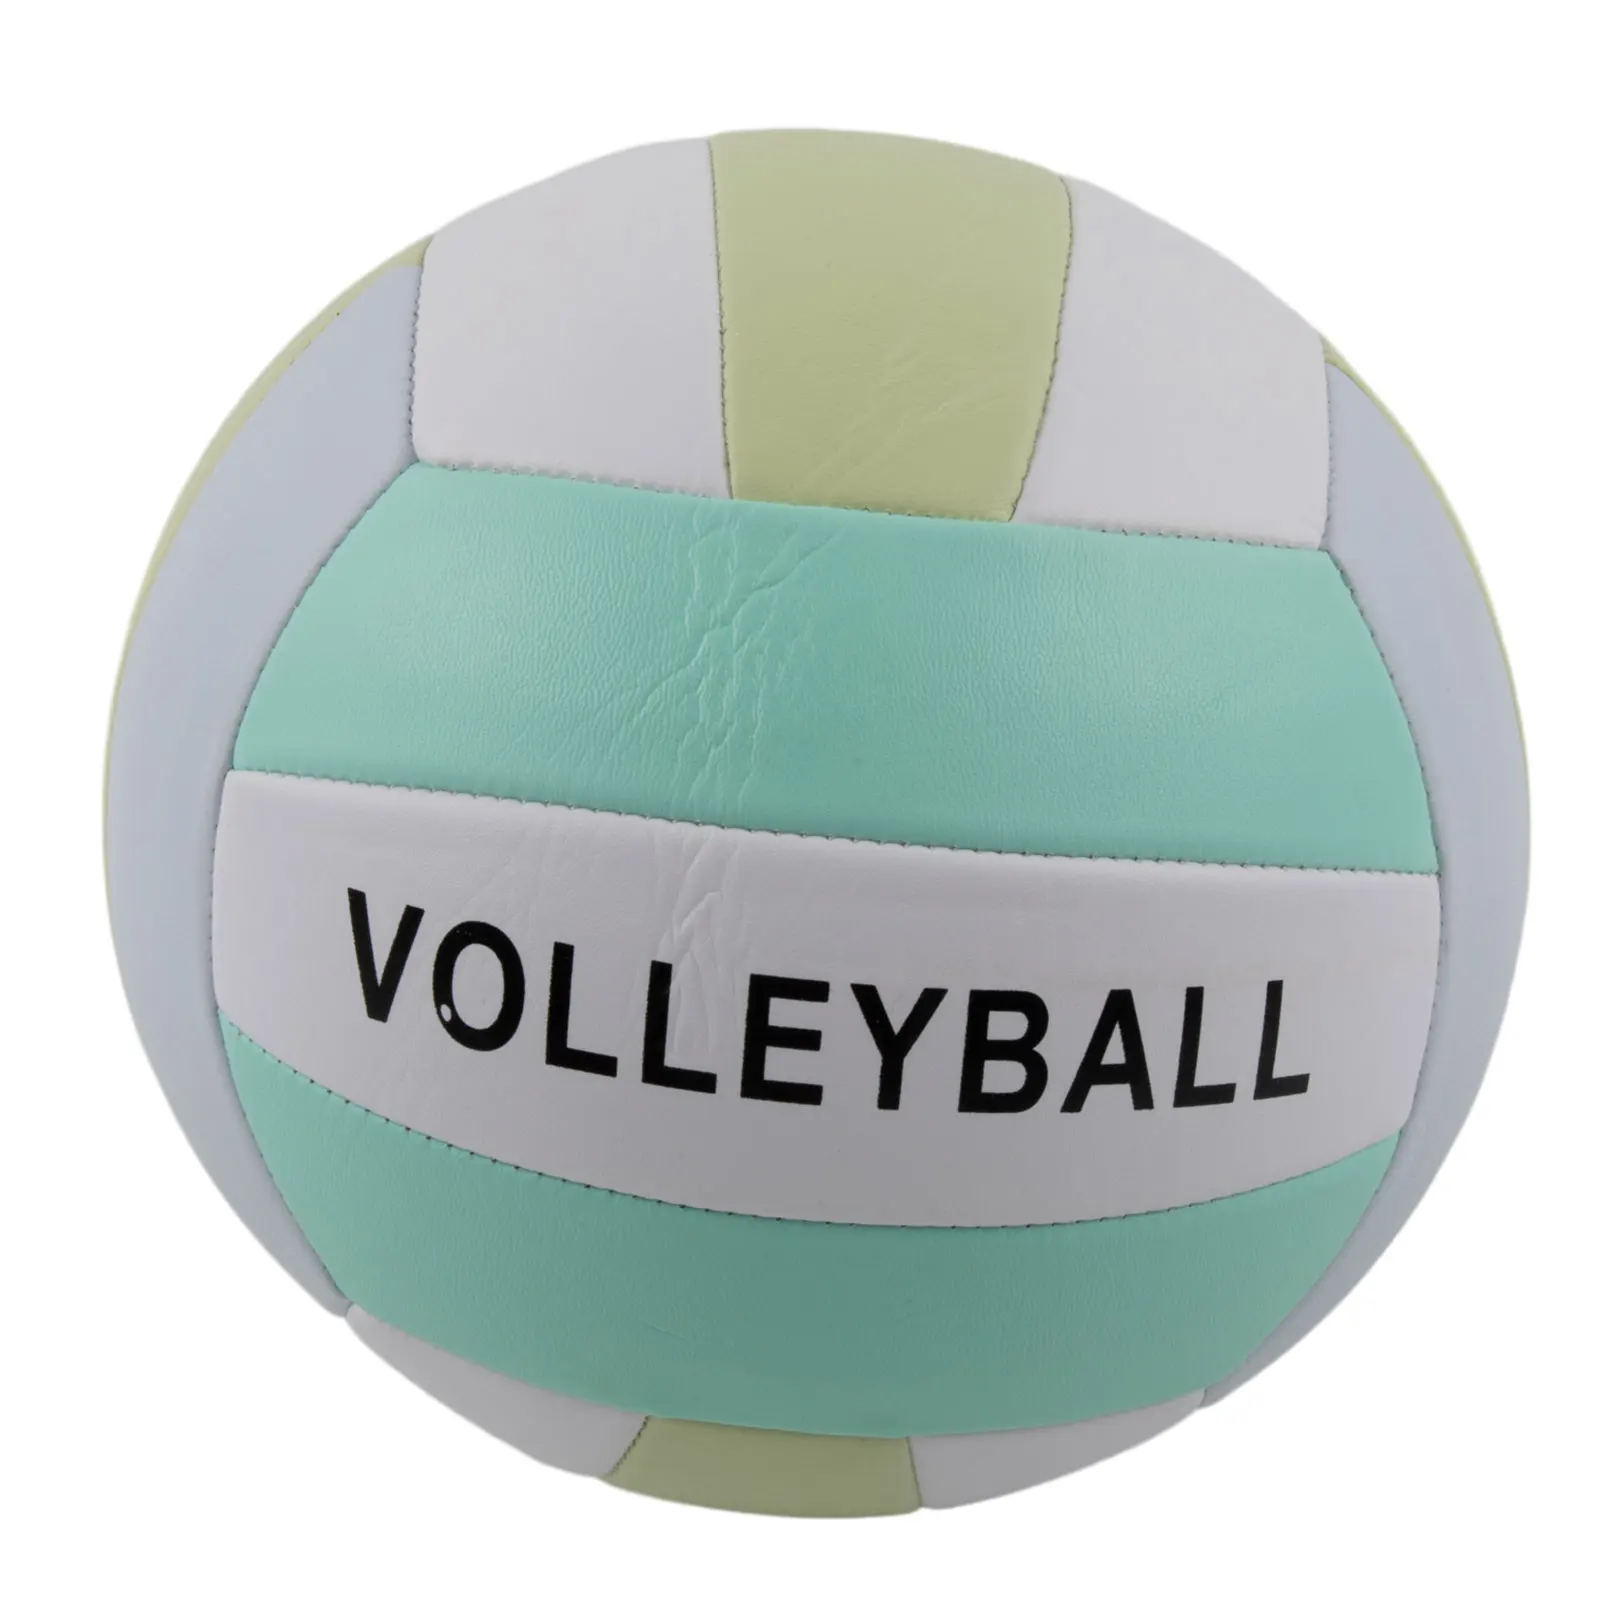 

Мяч для волейбола, резиновая нескользящая подкладка для пляжных игр и волейбола, для тренировок в помещении и на открытом воздухе, Размер 5